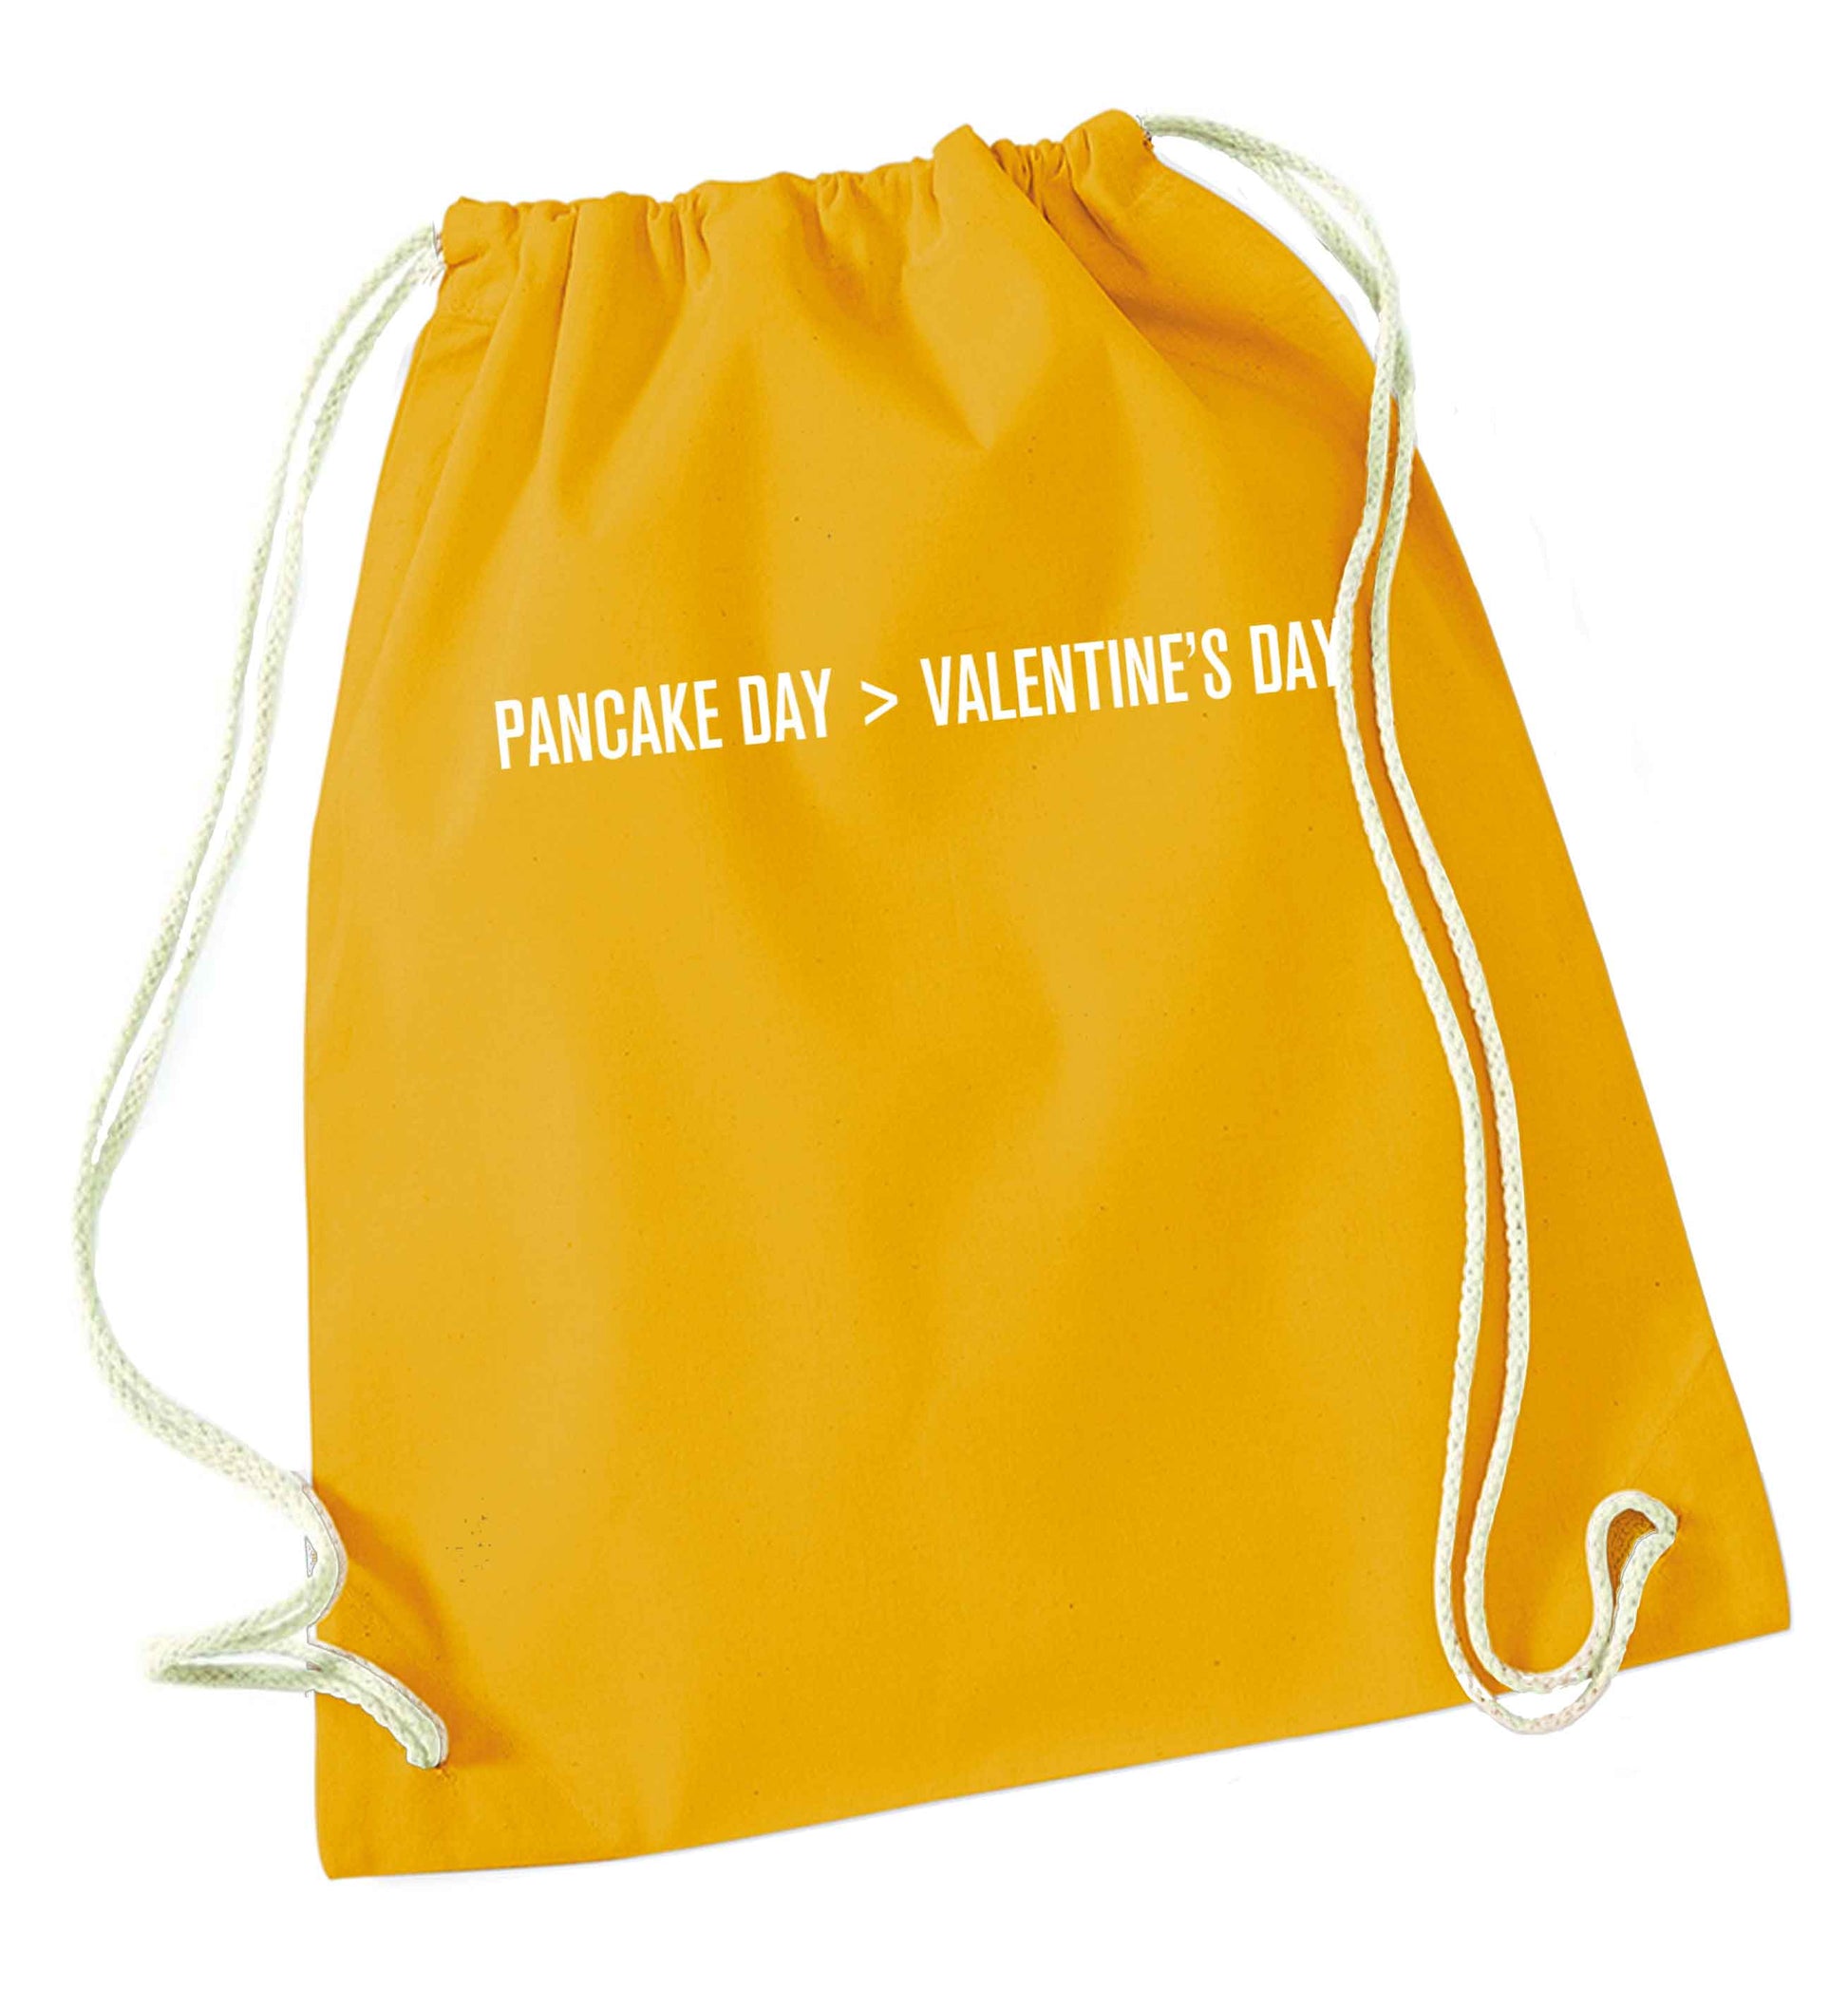 Pancake day > valentines day mustard drawstring bag